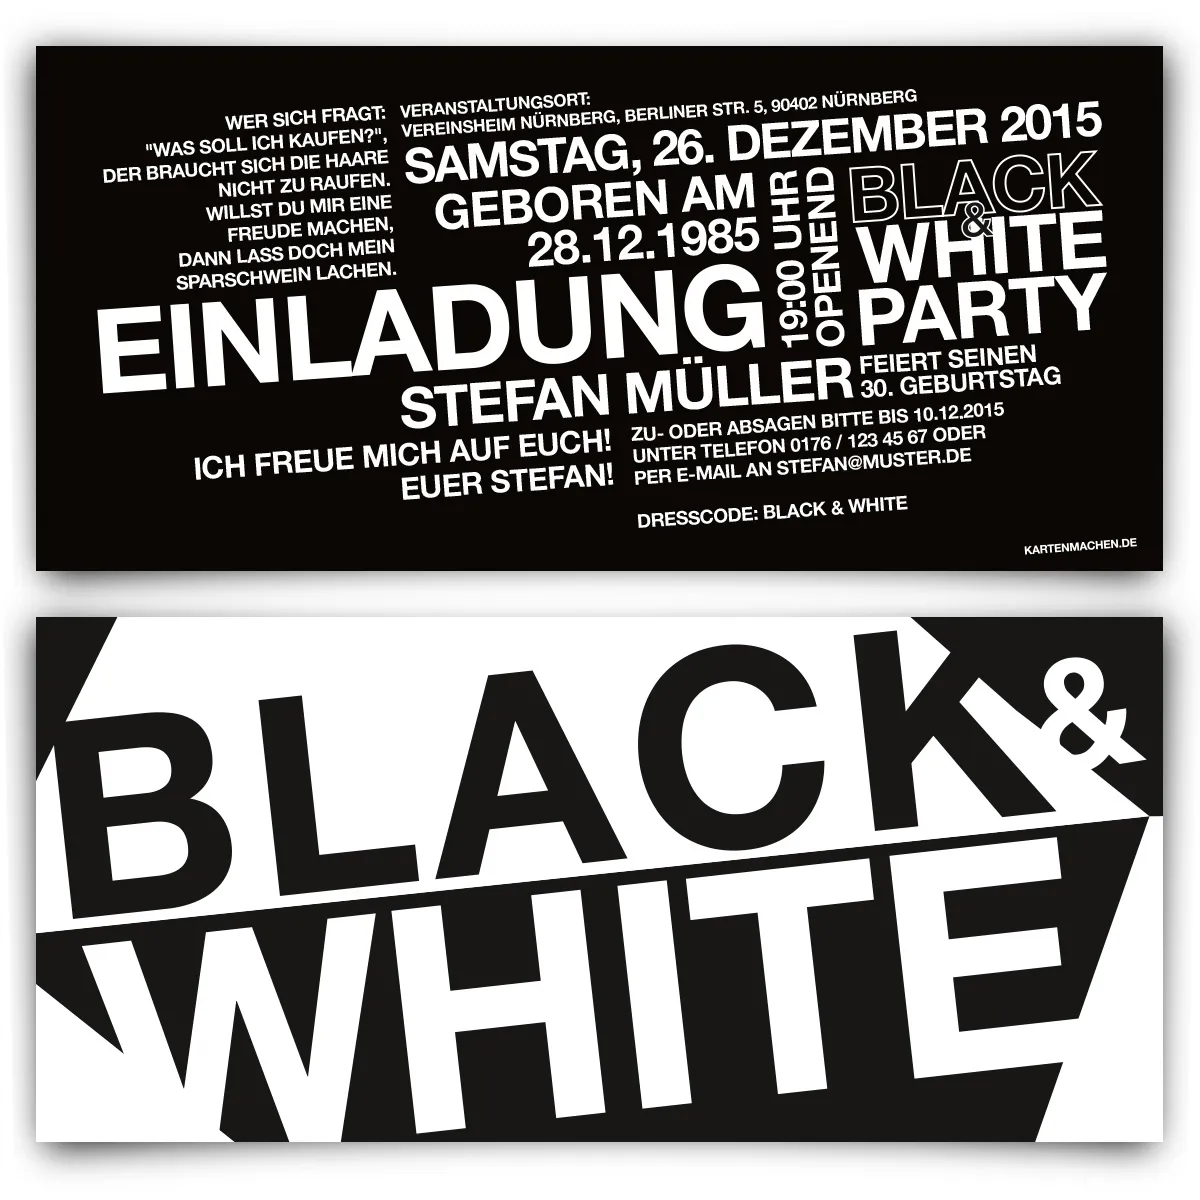 Geburtstag Einladungen - Black & White Party in Schwarz